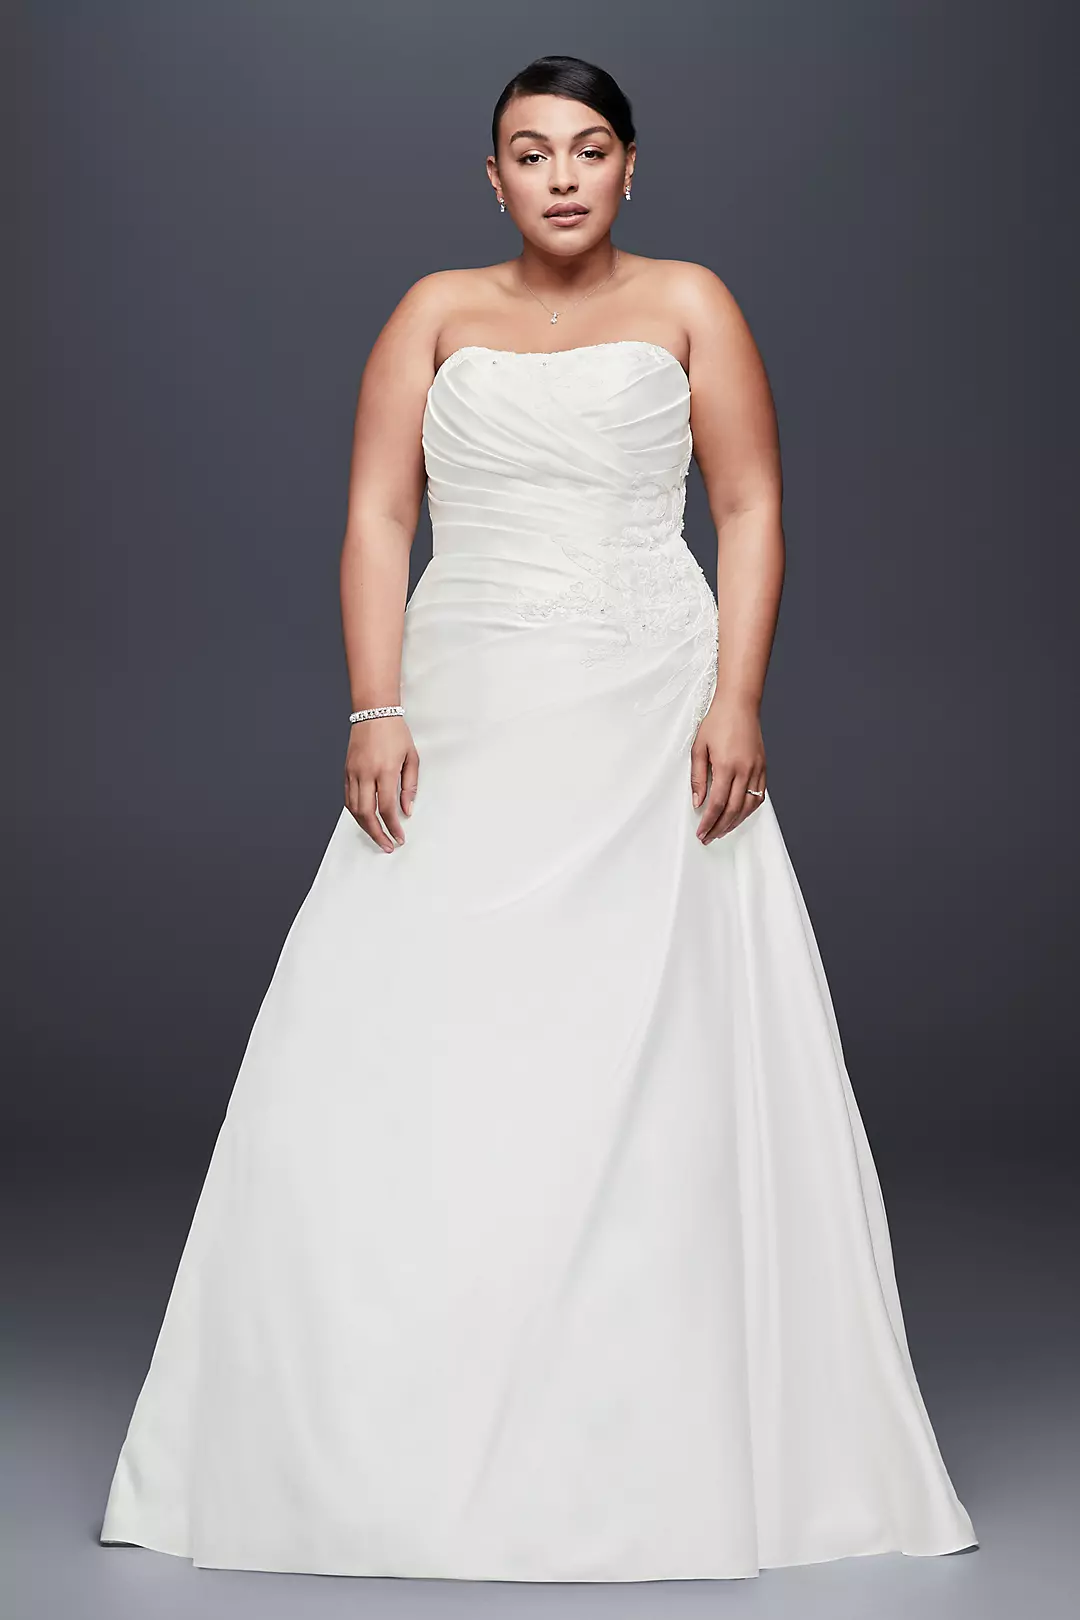 Draped Satin Plus Size Wedding Dress with Beading Image